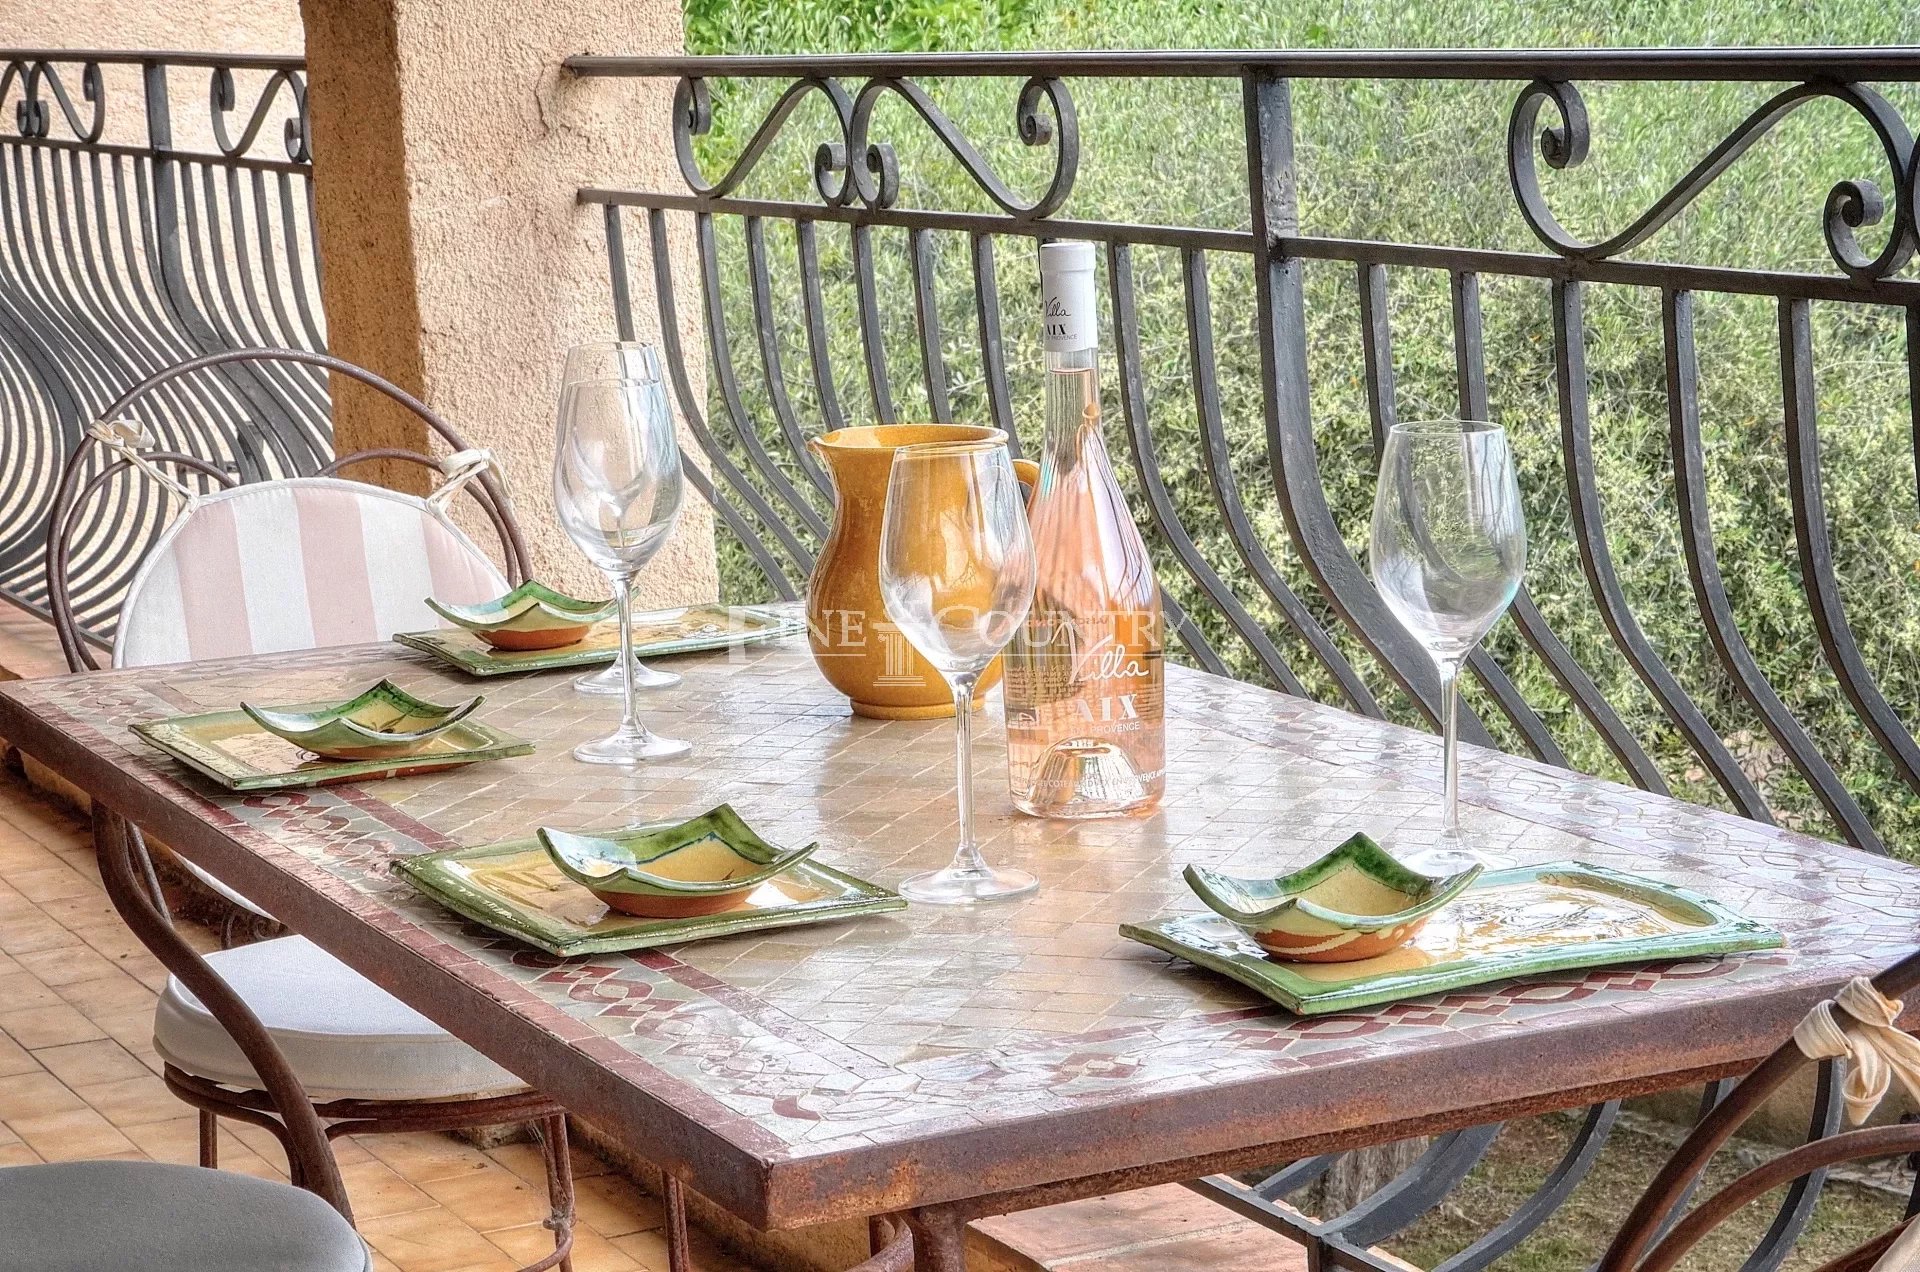 Charming Provençale Villa for Sale in Saint-Cezaire-sur-Siagne with Enchanting Landscapes